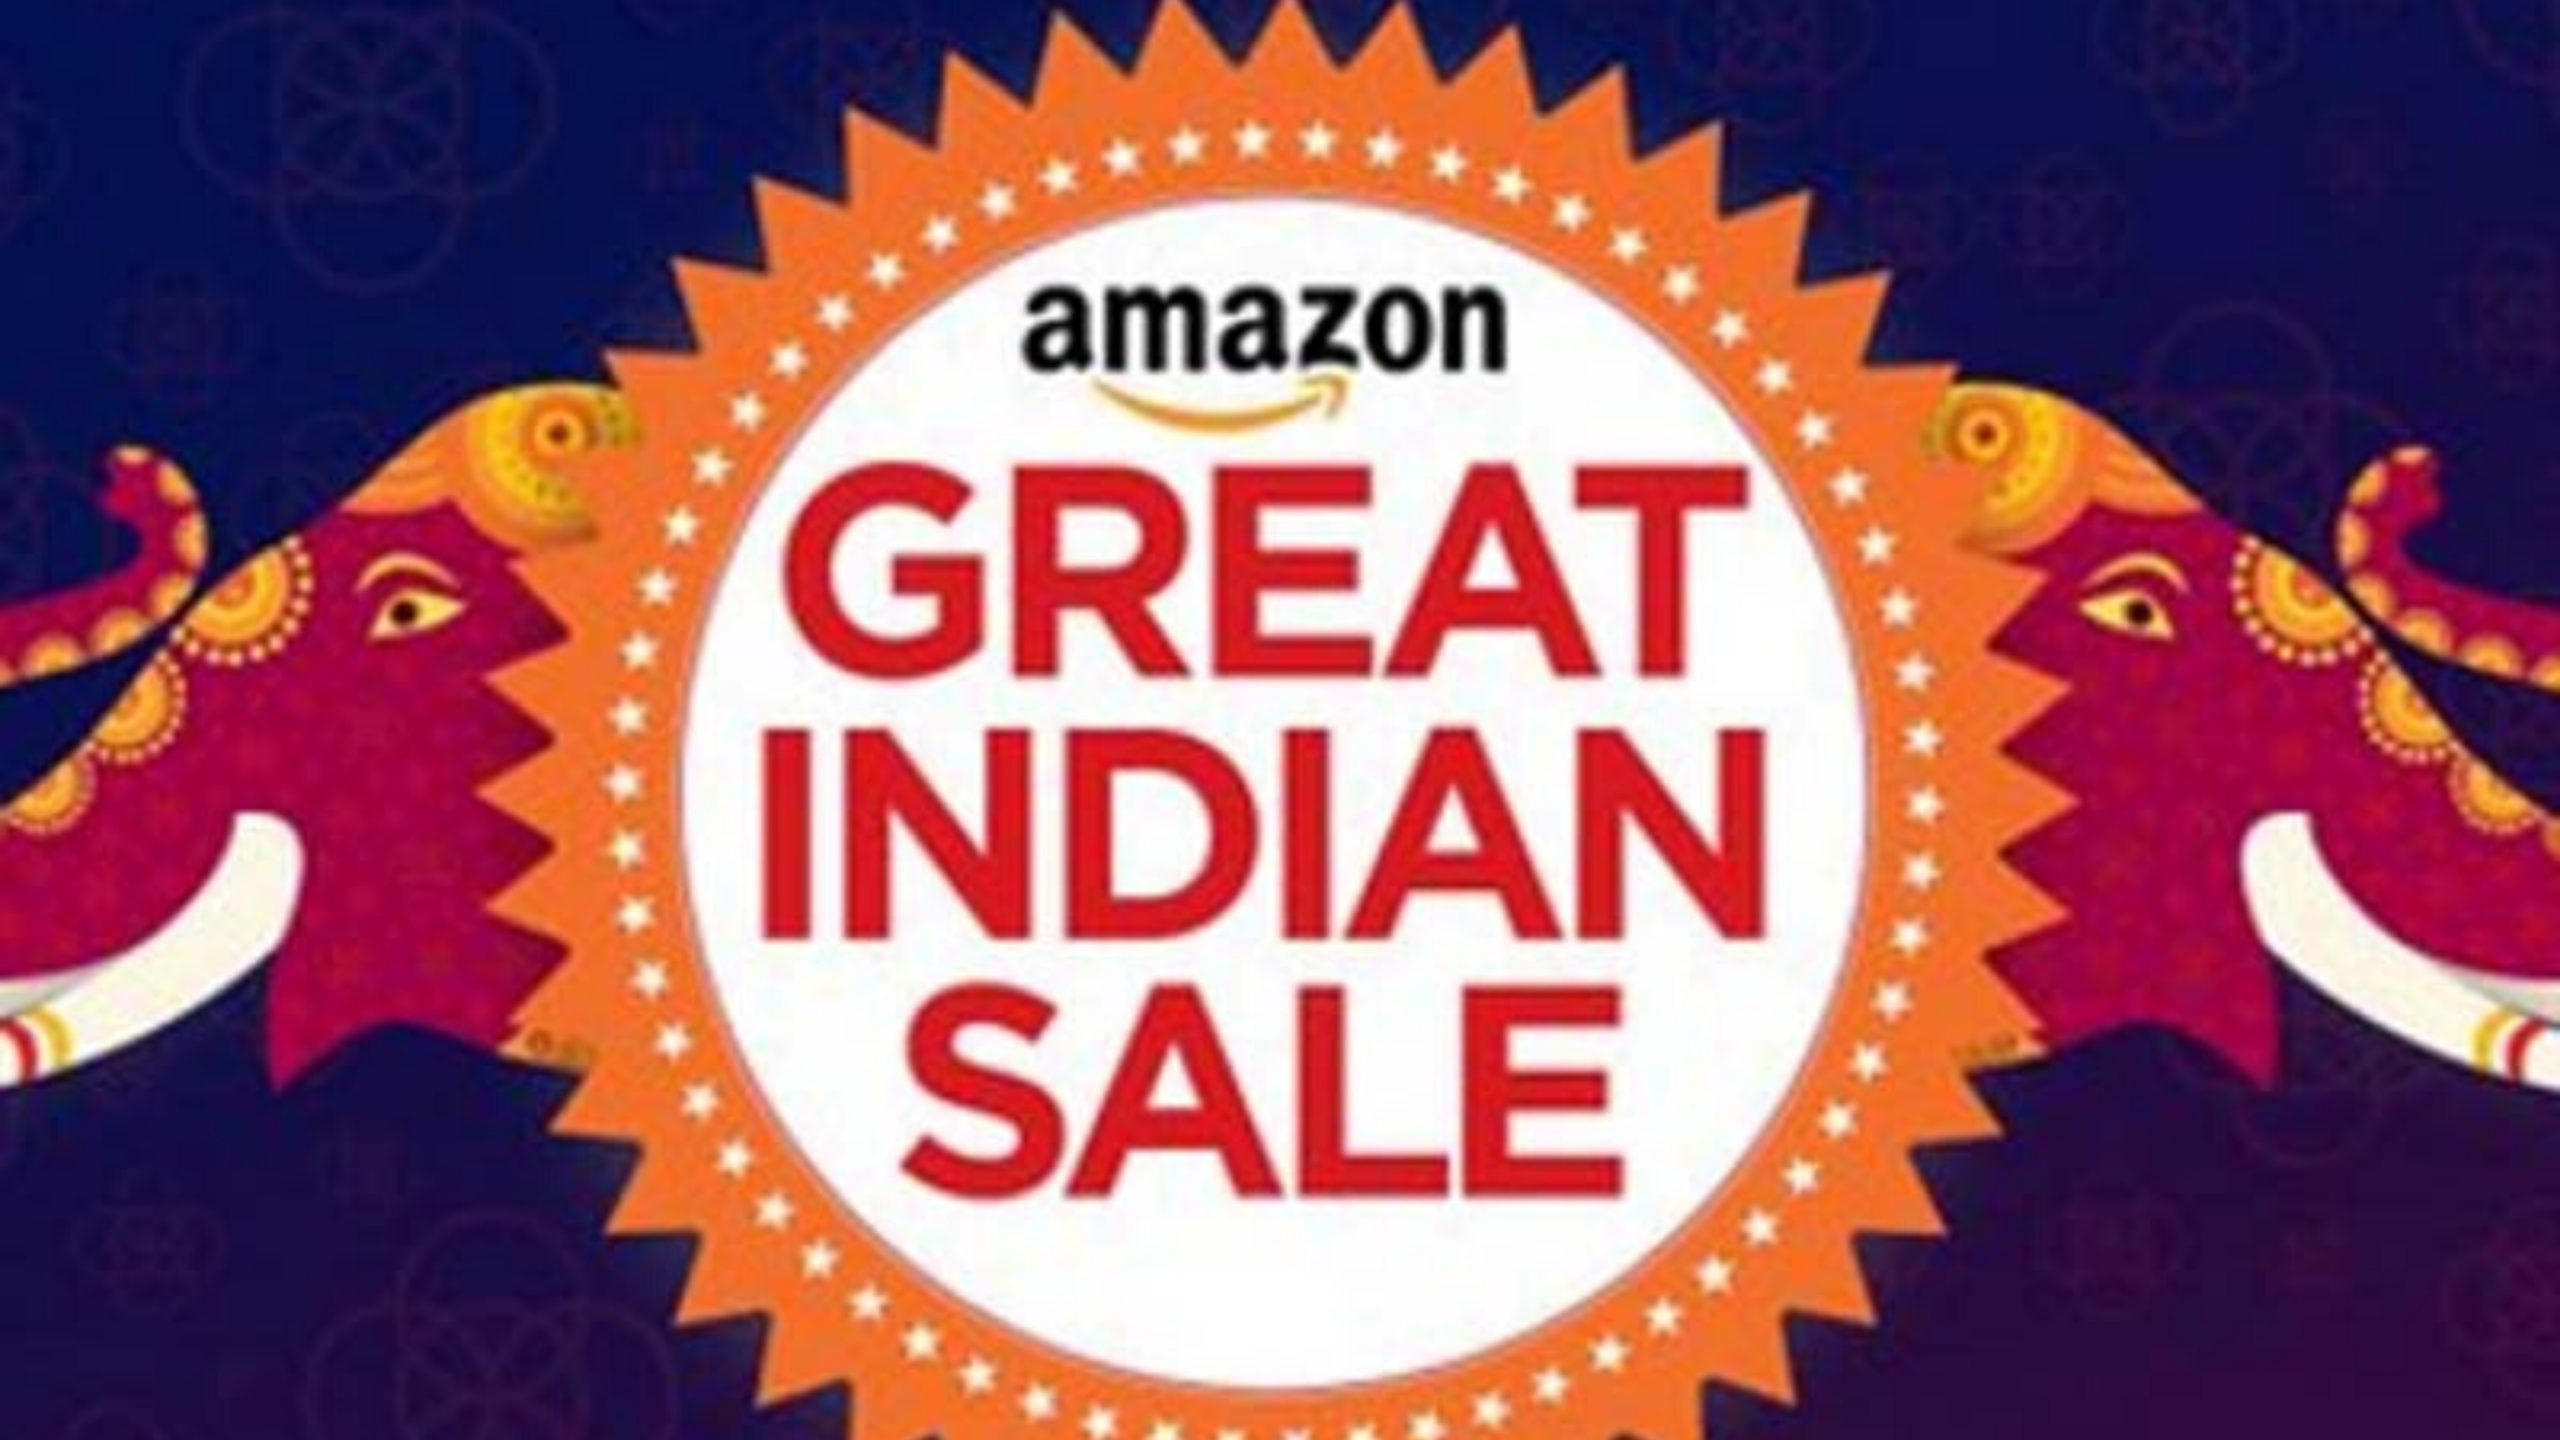 Amazon Большая индийская распродажа 2020 уже началась – успейте заключить сделку!